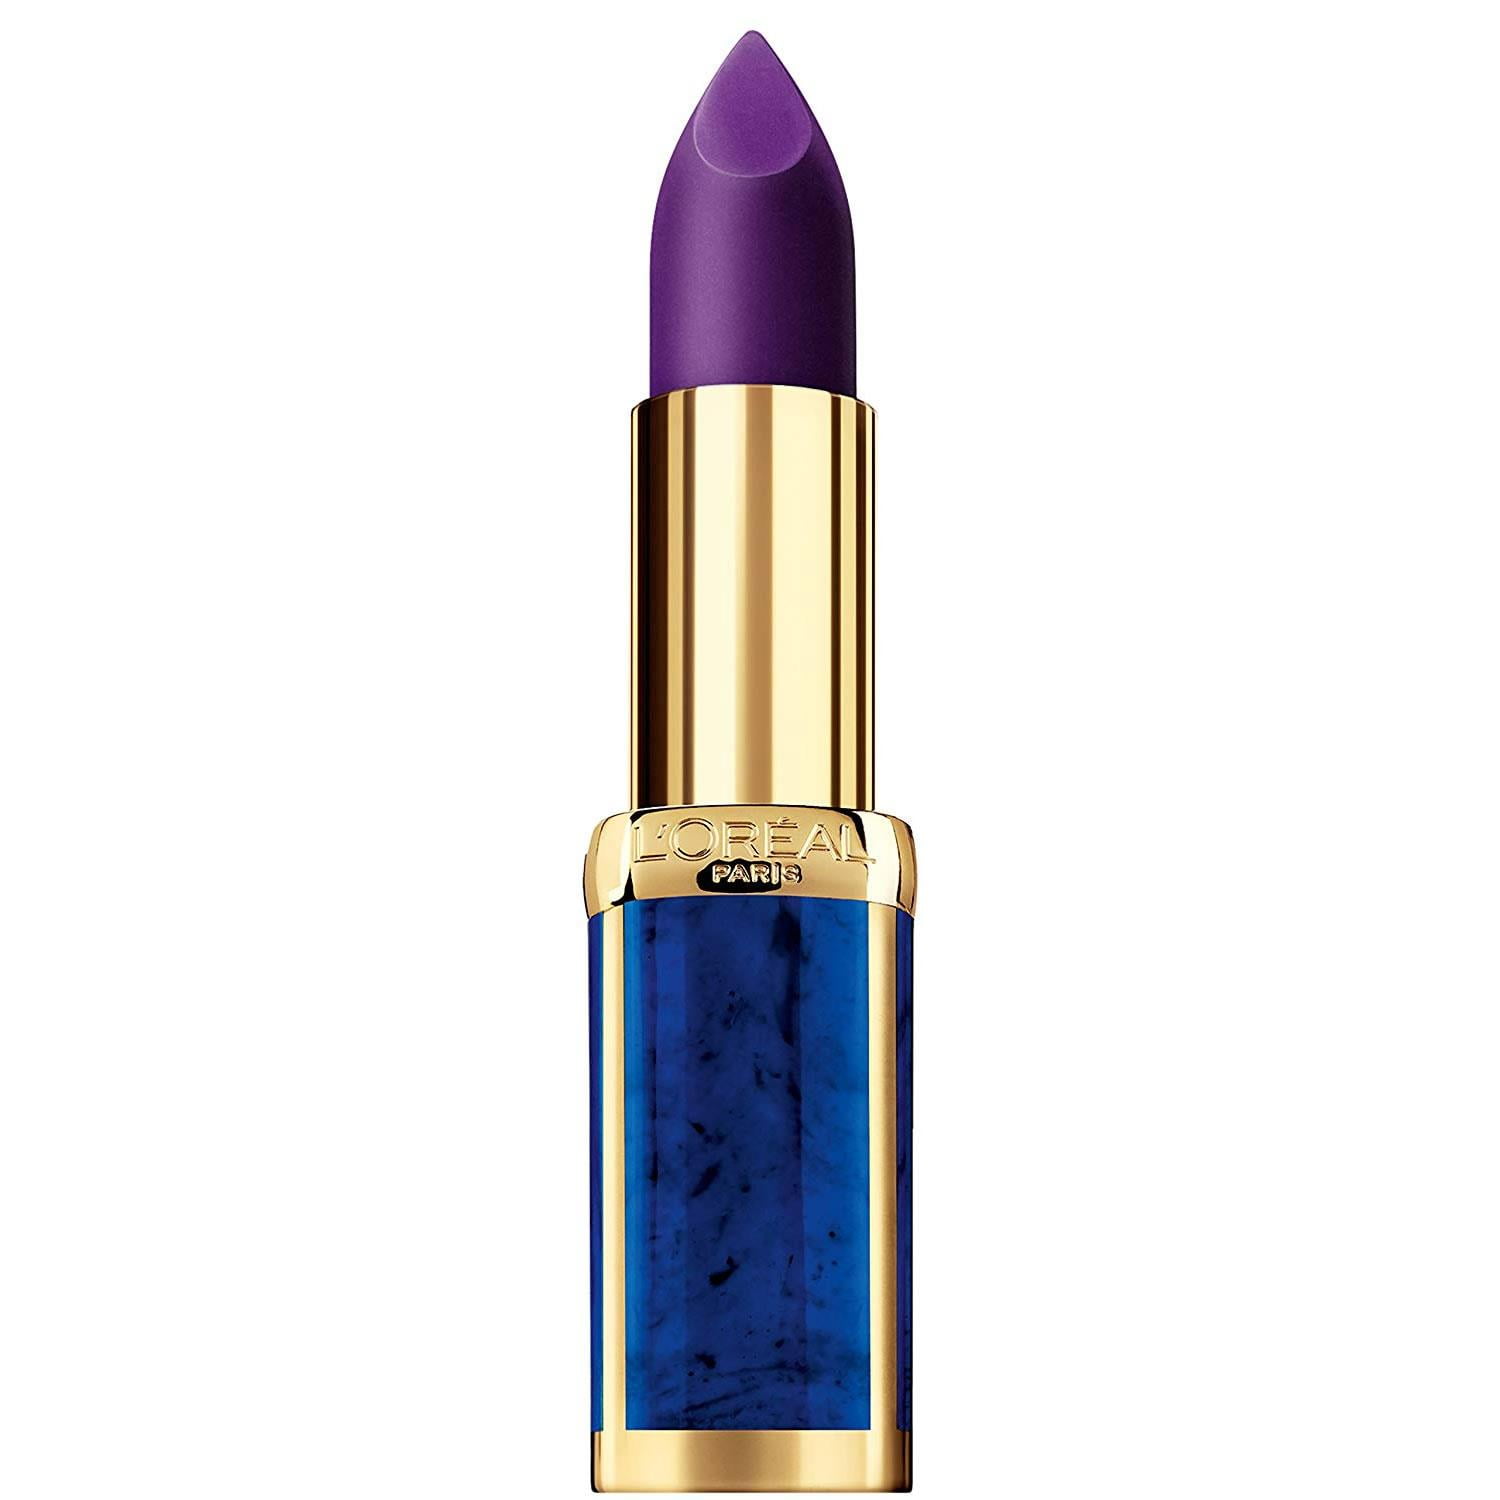 L'Oreal Paris Balmain Lipstick Freedom Color Riche Cosmetics Makeup K2834100 Designer - Walmart.com